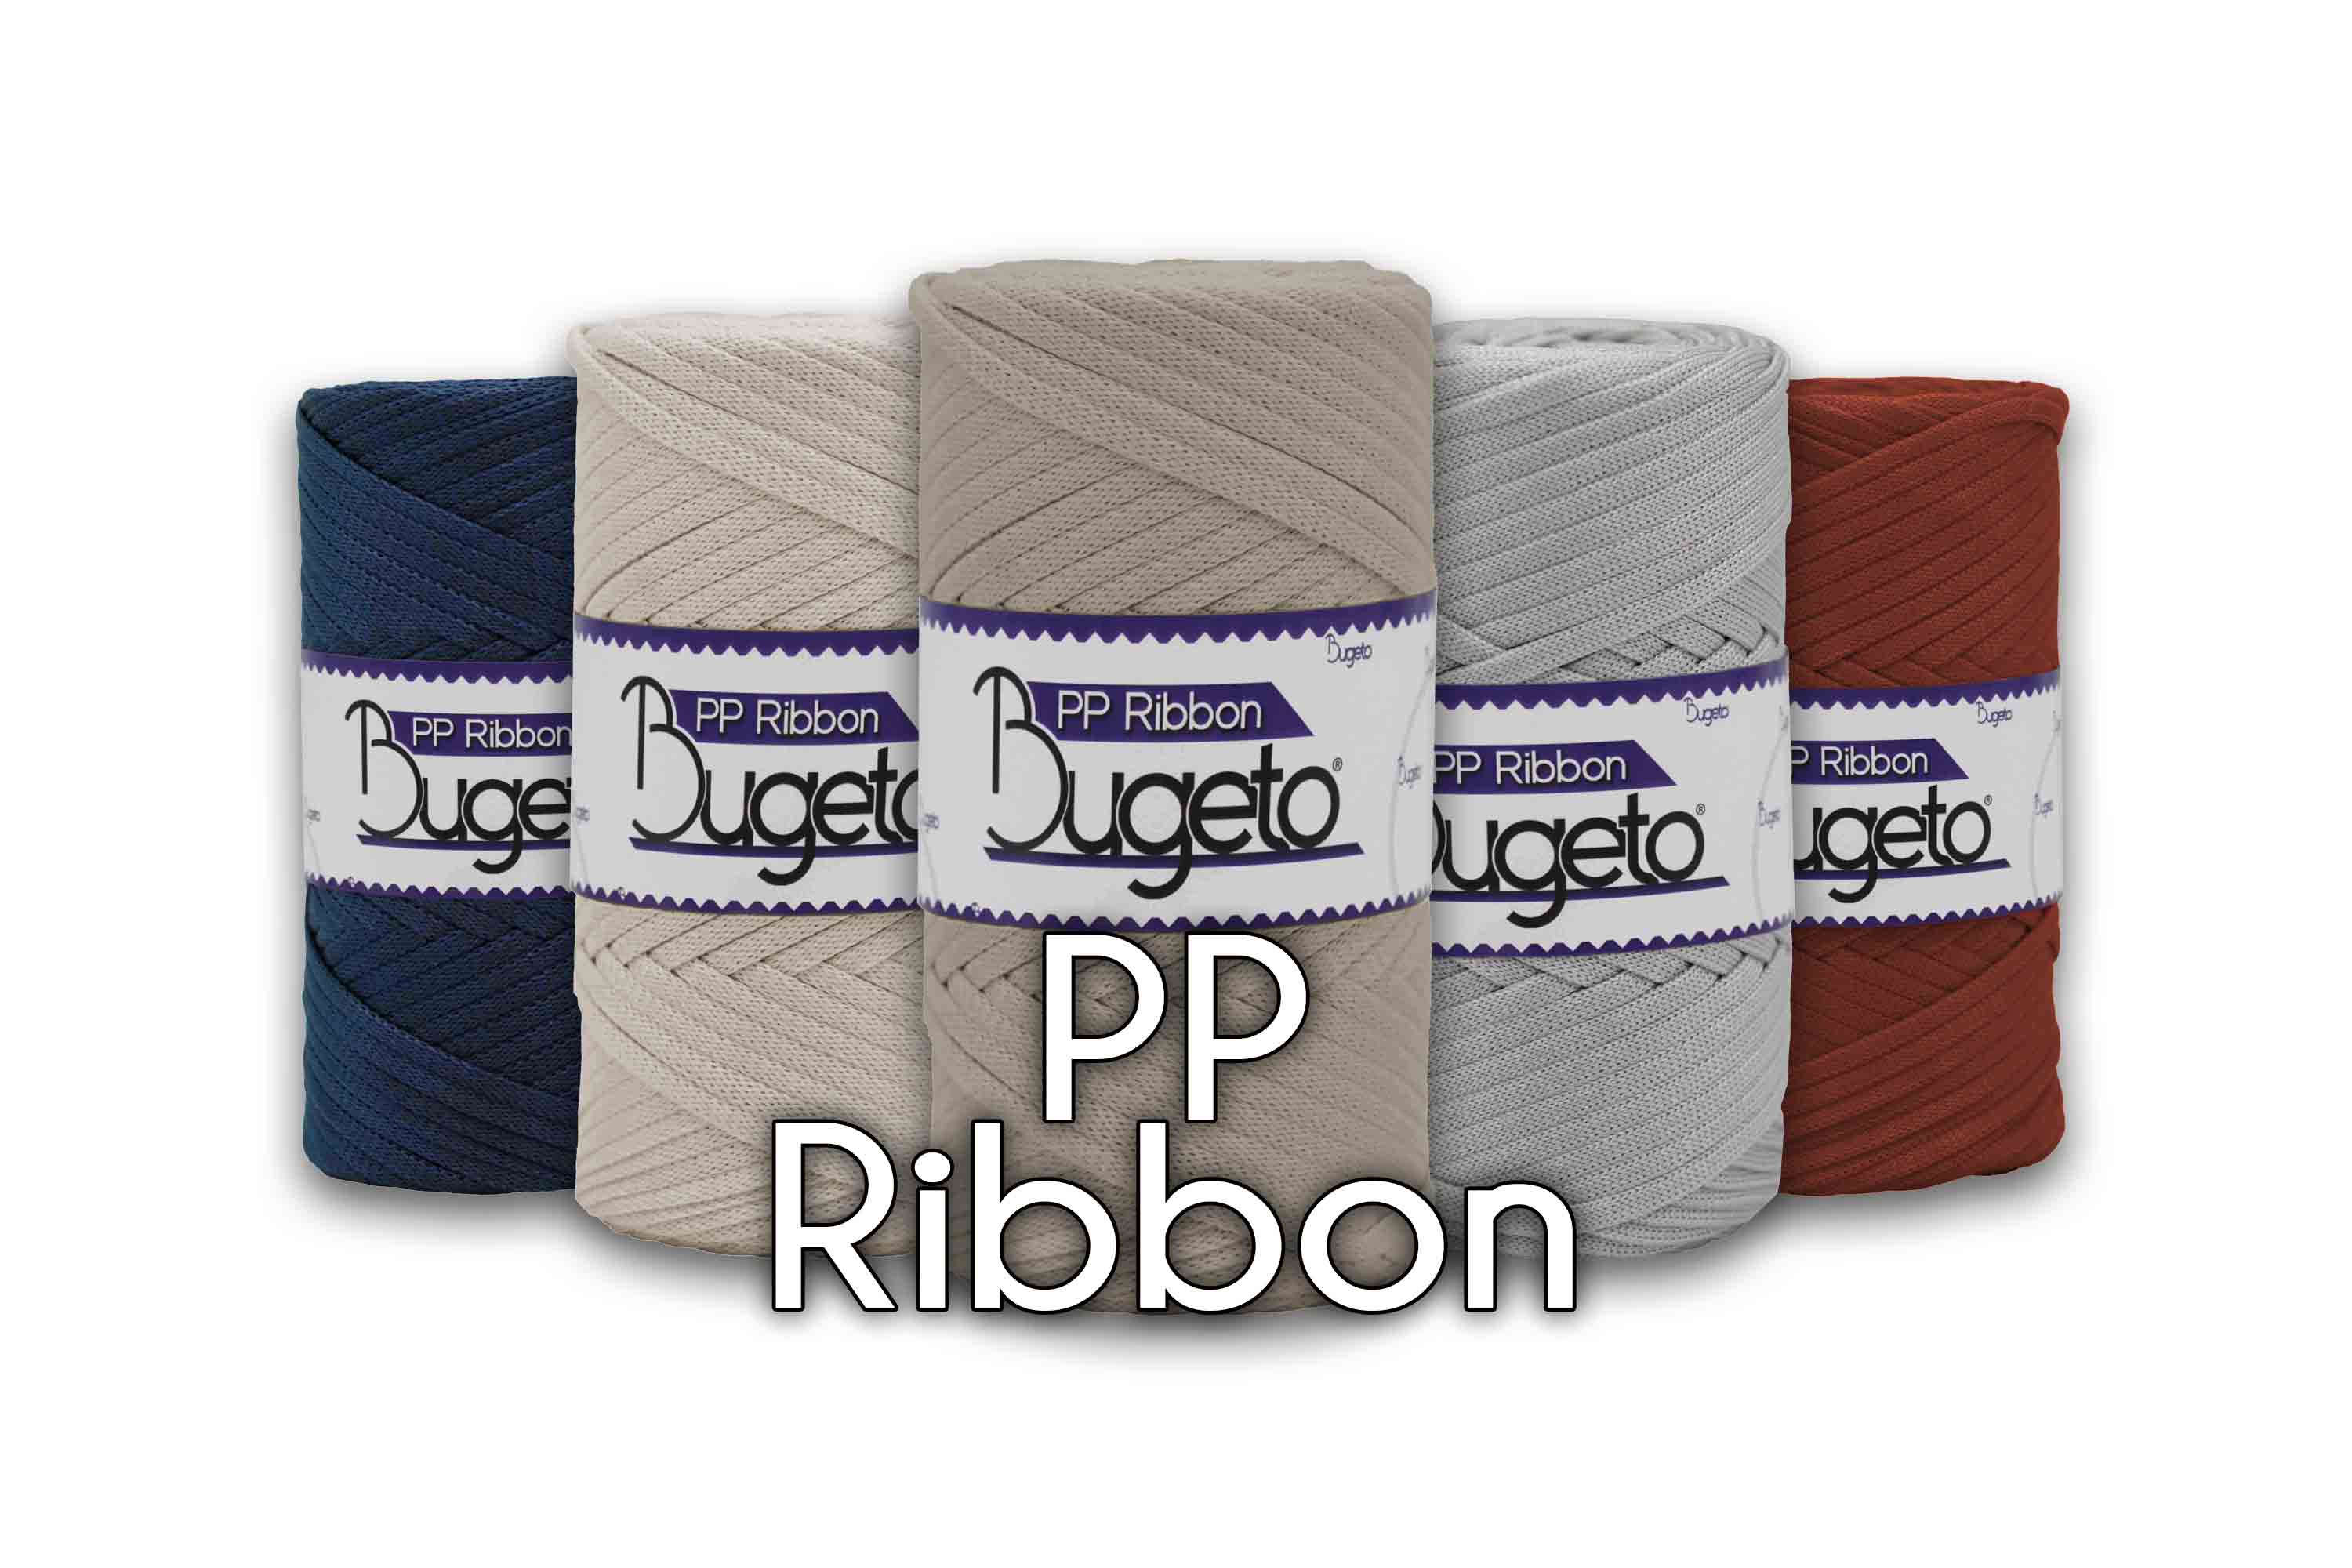 polyproplene yarns pp ribbon flat yarn  bugeto yarn